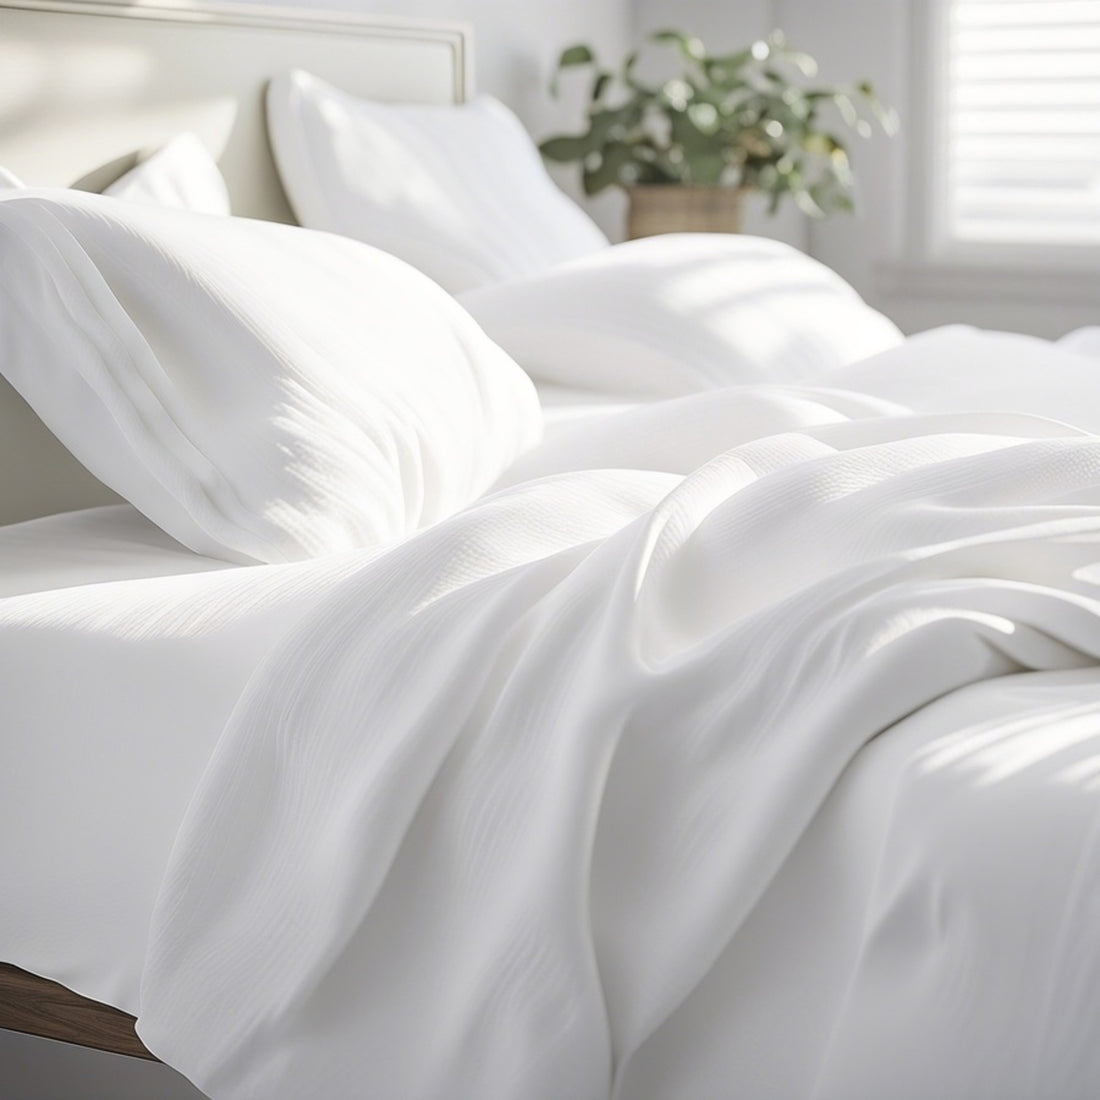 Lakan och sängkläder som garanterar en god natts sömn